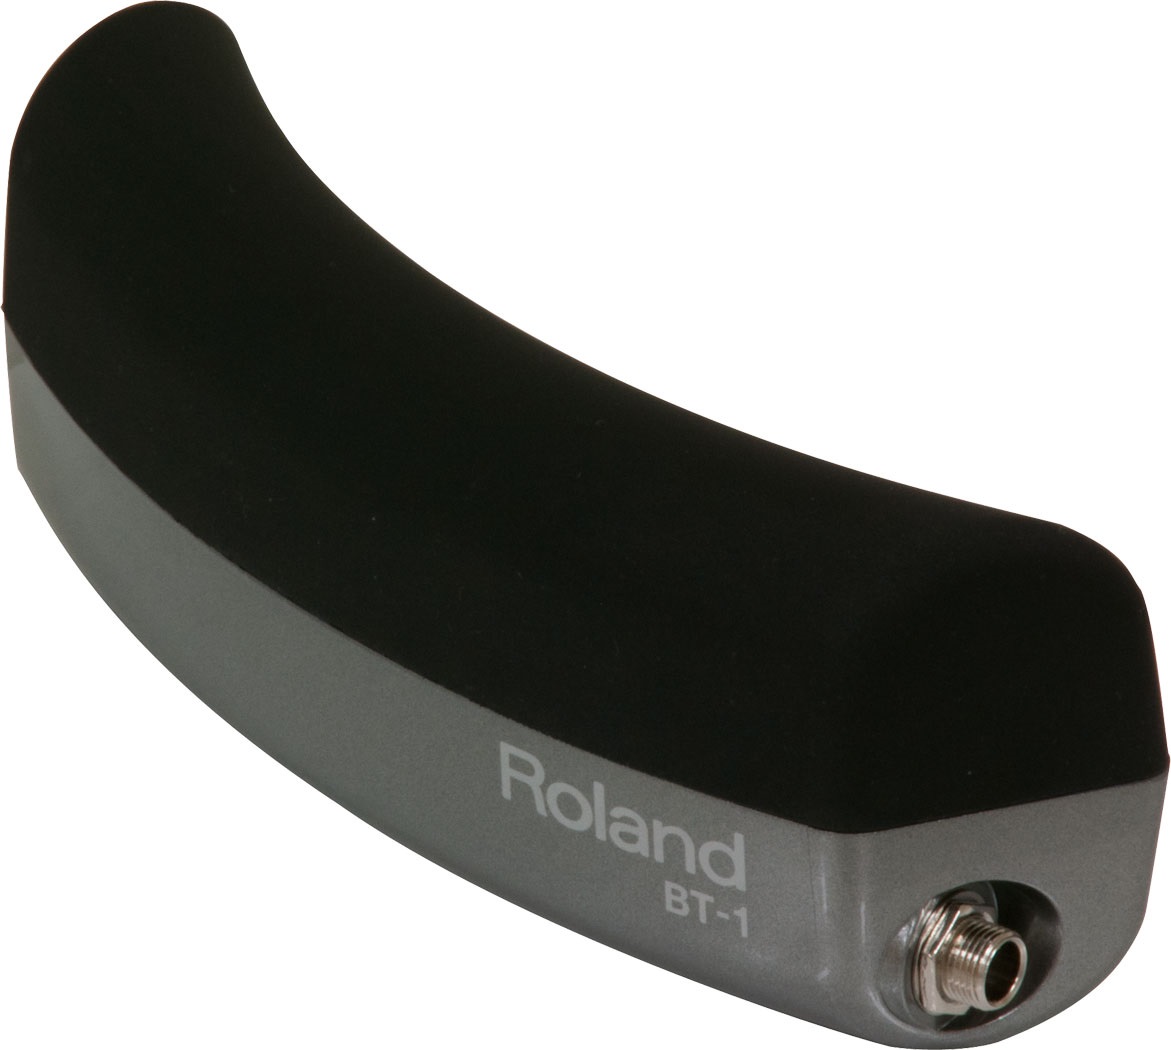 Fotografie Roland BT-1 Roland